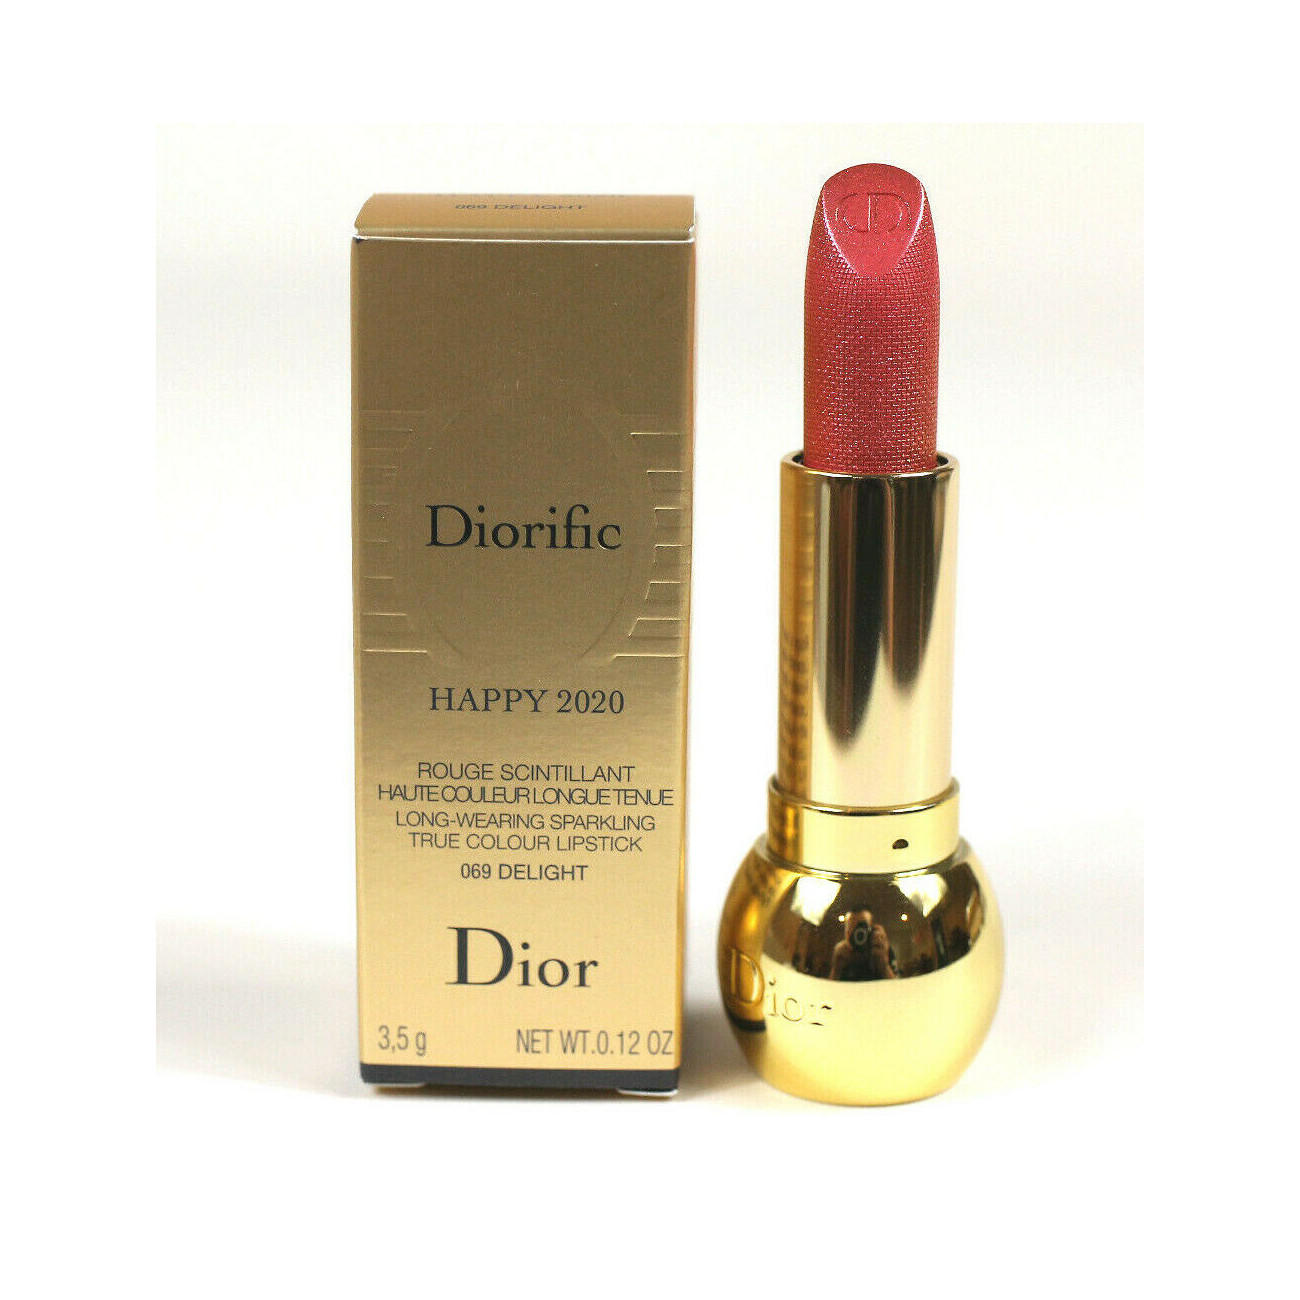 Dior Diorific Happy 2020 Lipstick Delight 069